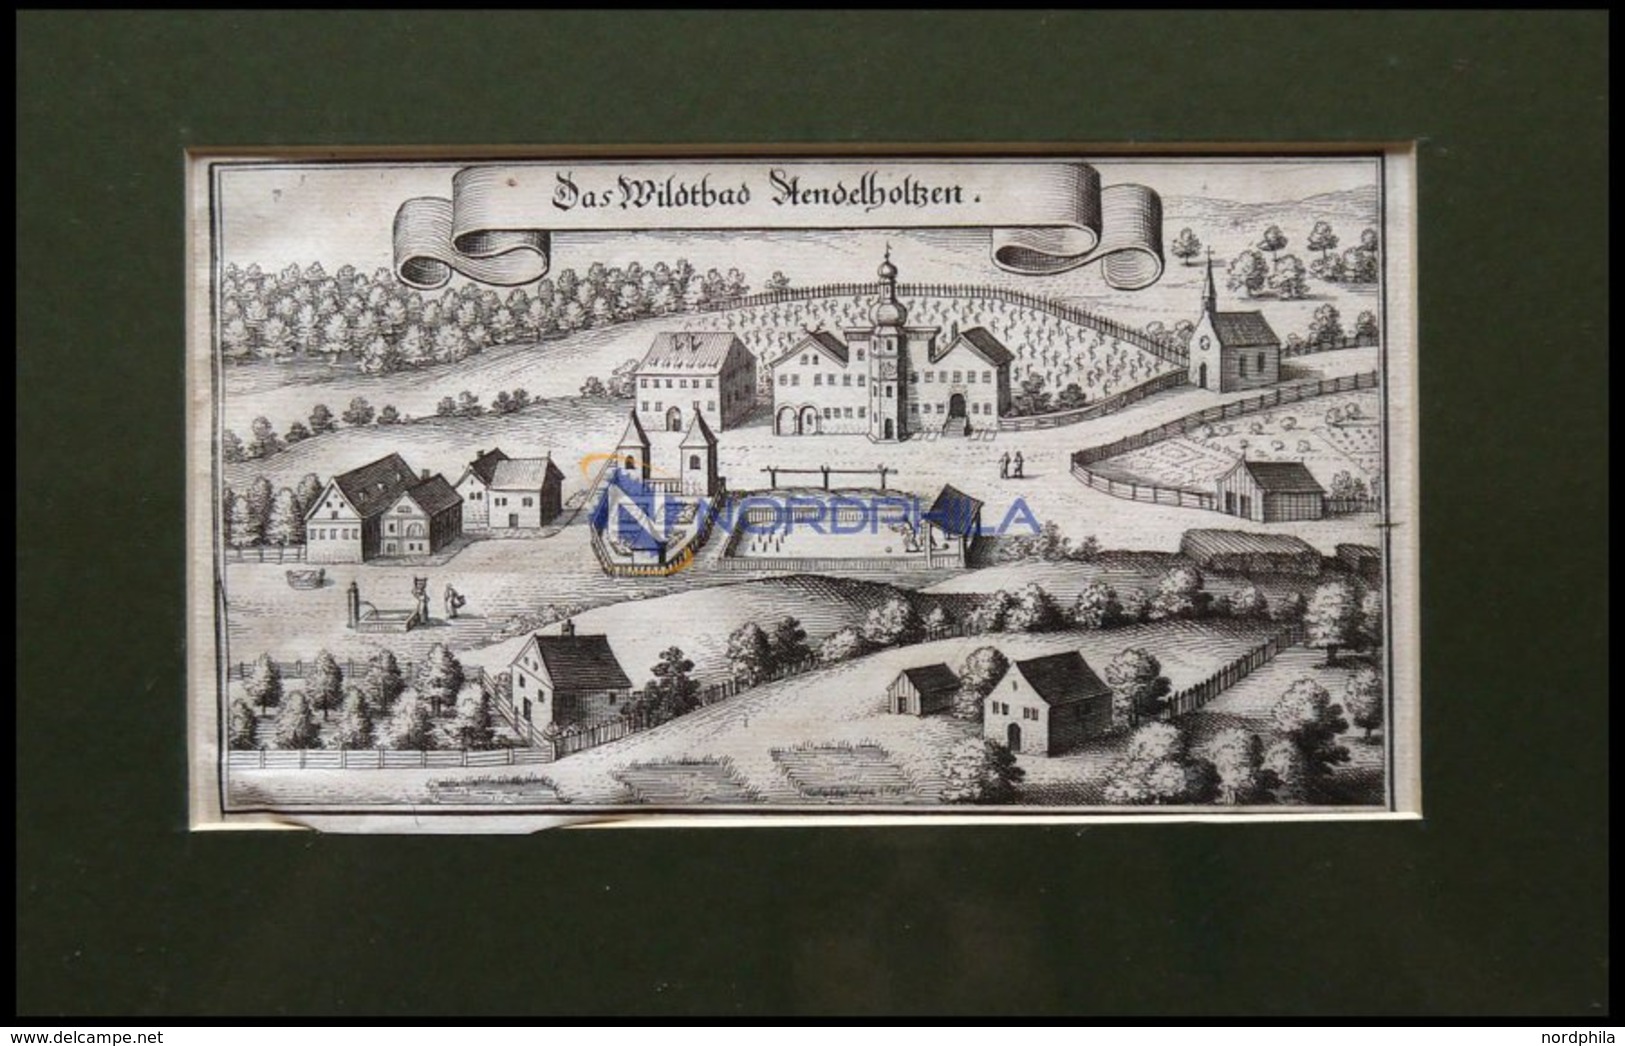 BAD ADELHOLZEN/OBERB., Gesamtansicht, Kupferstich Von Merian Um 1645 - Lithographien